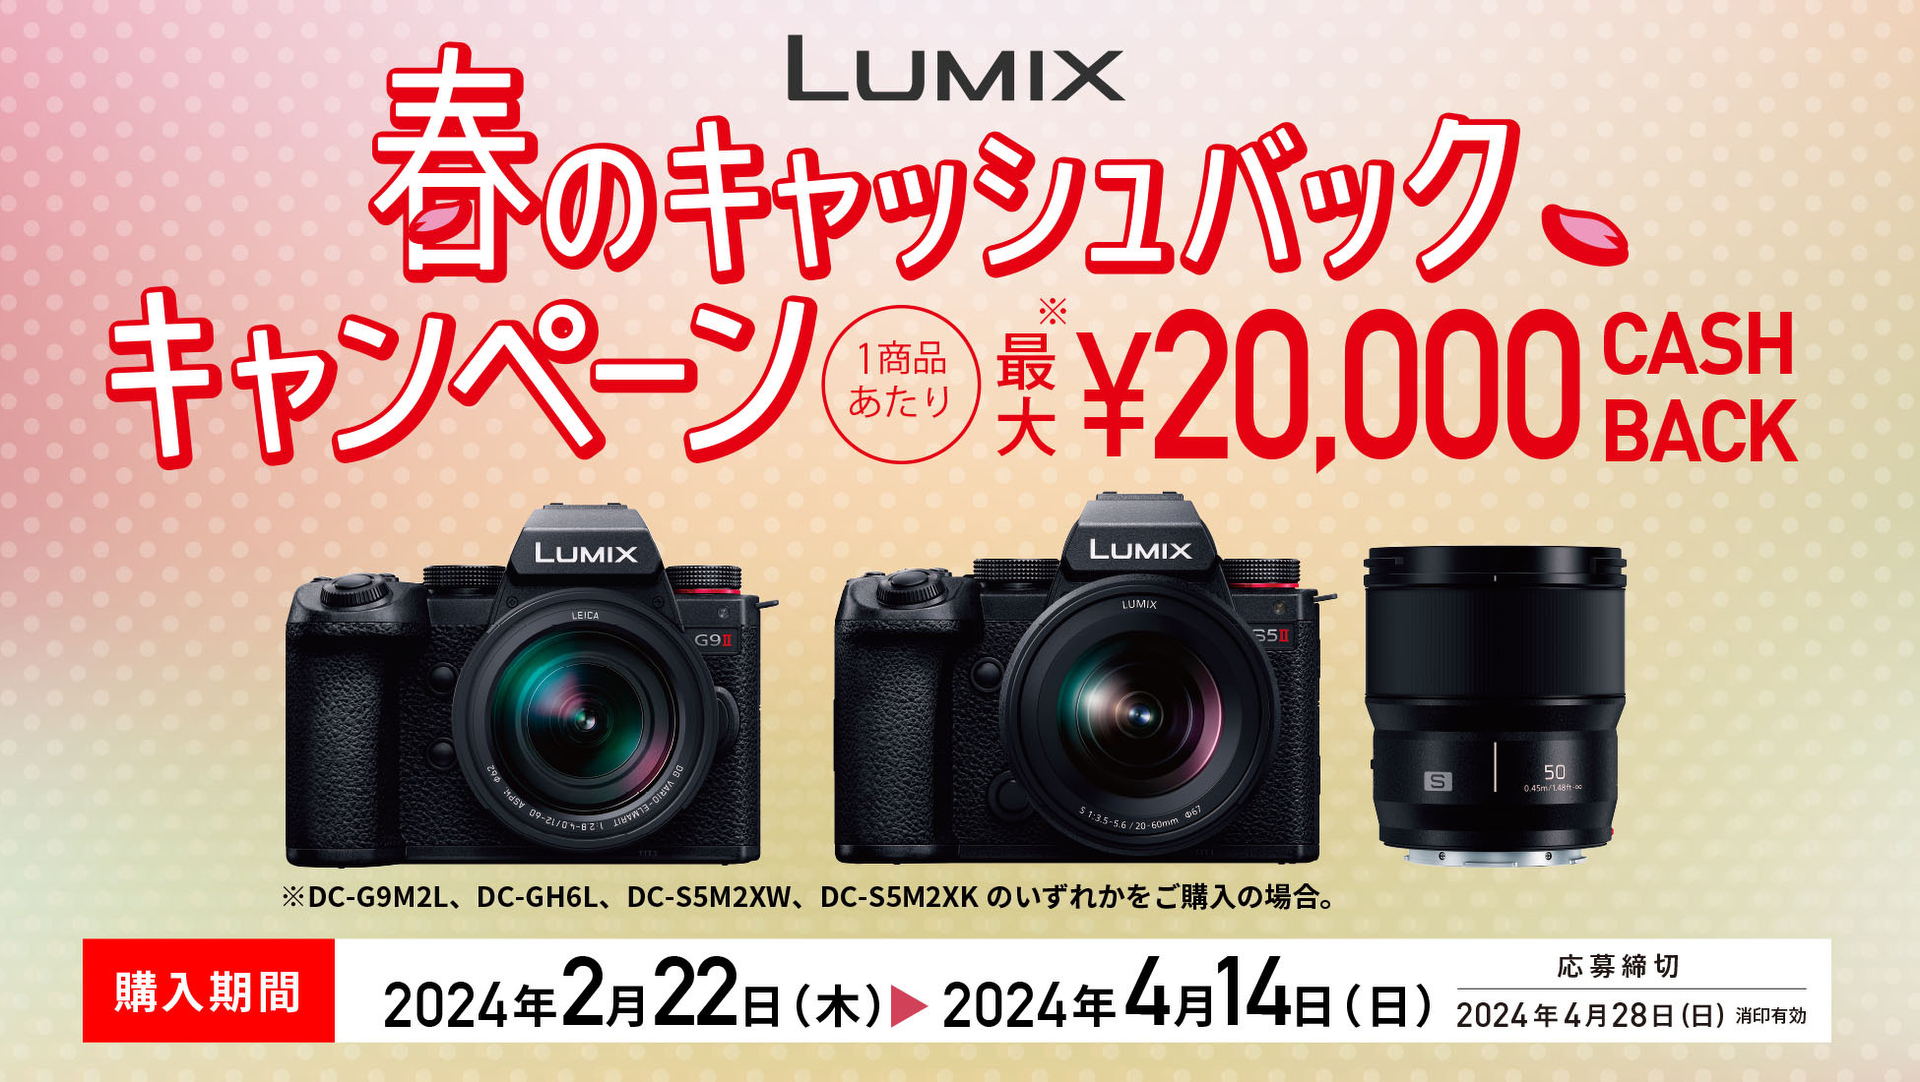 【キャンペーン】パナソニック、LUMIX購入で最大2万円を還元する ...